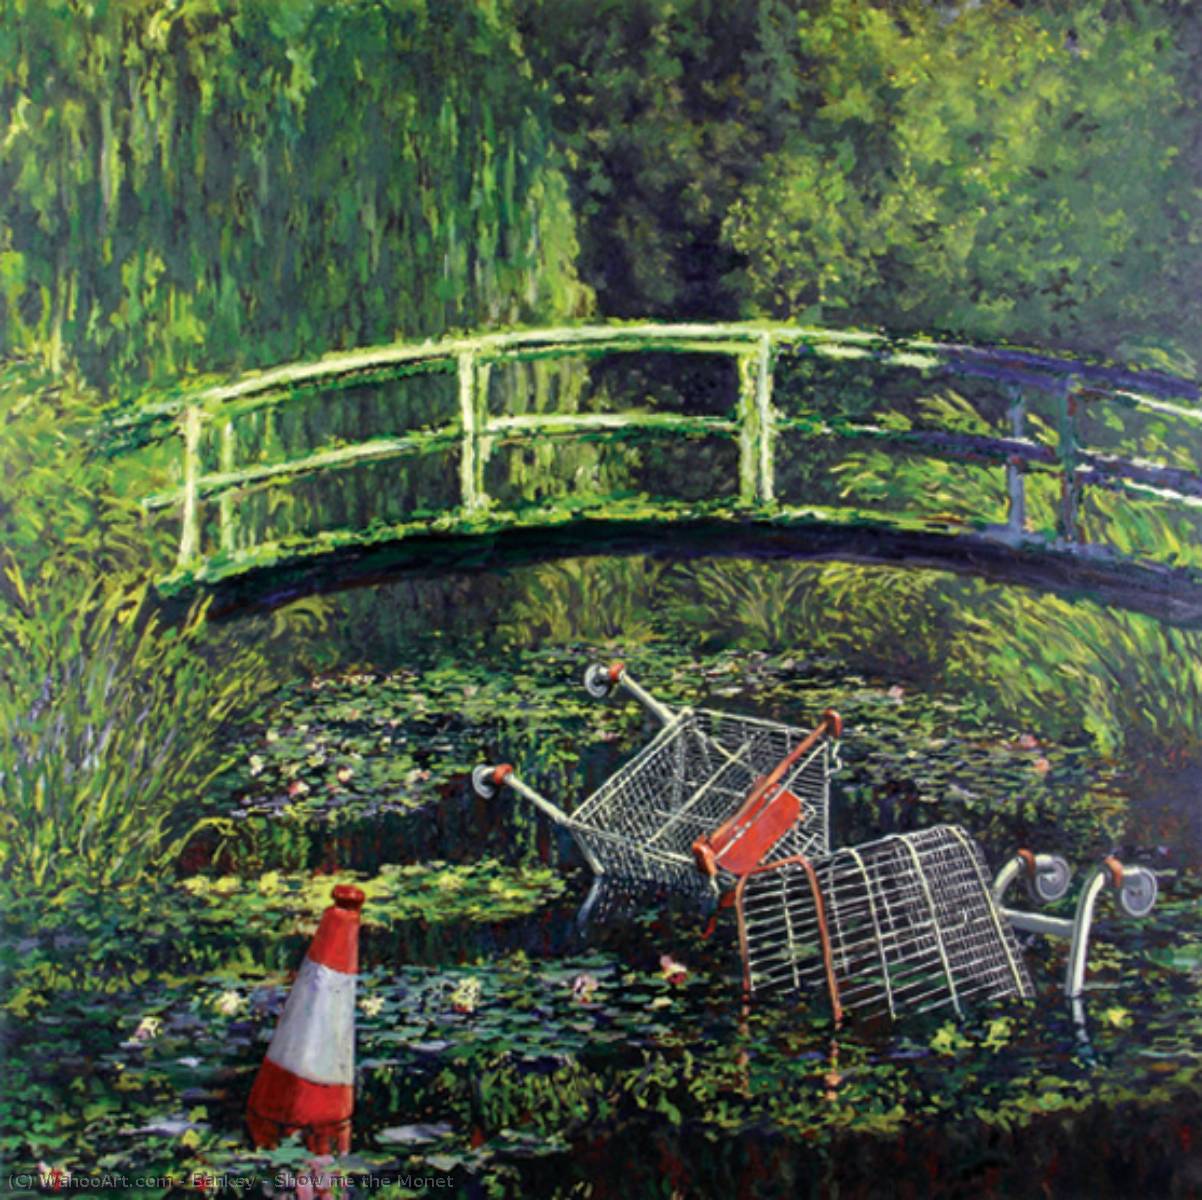 WikiOO.org - אנציקלופדיה לאמנויות יפות - ציור, יצירות אמנות Banksy - Show me the Monet